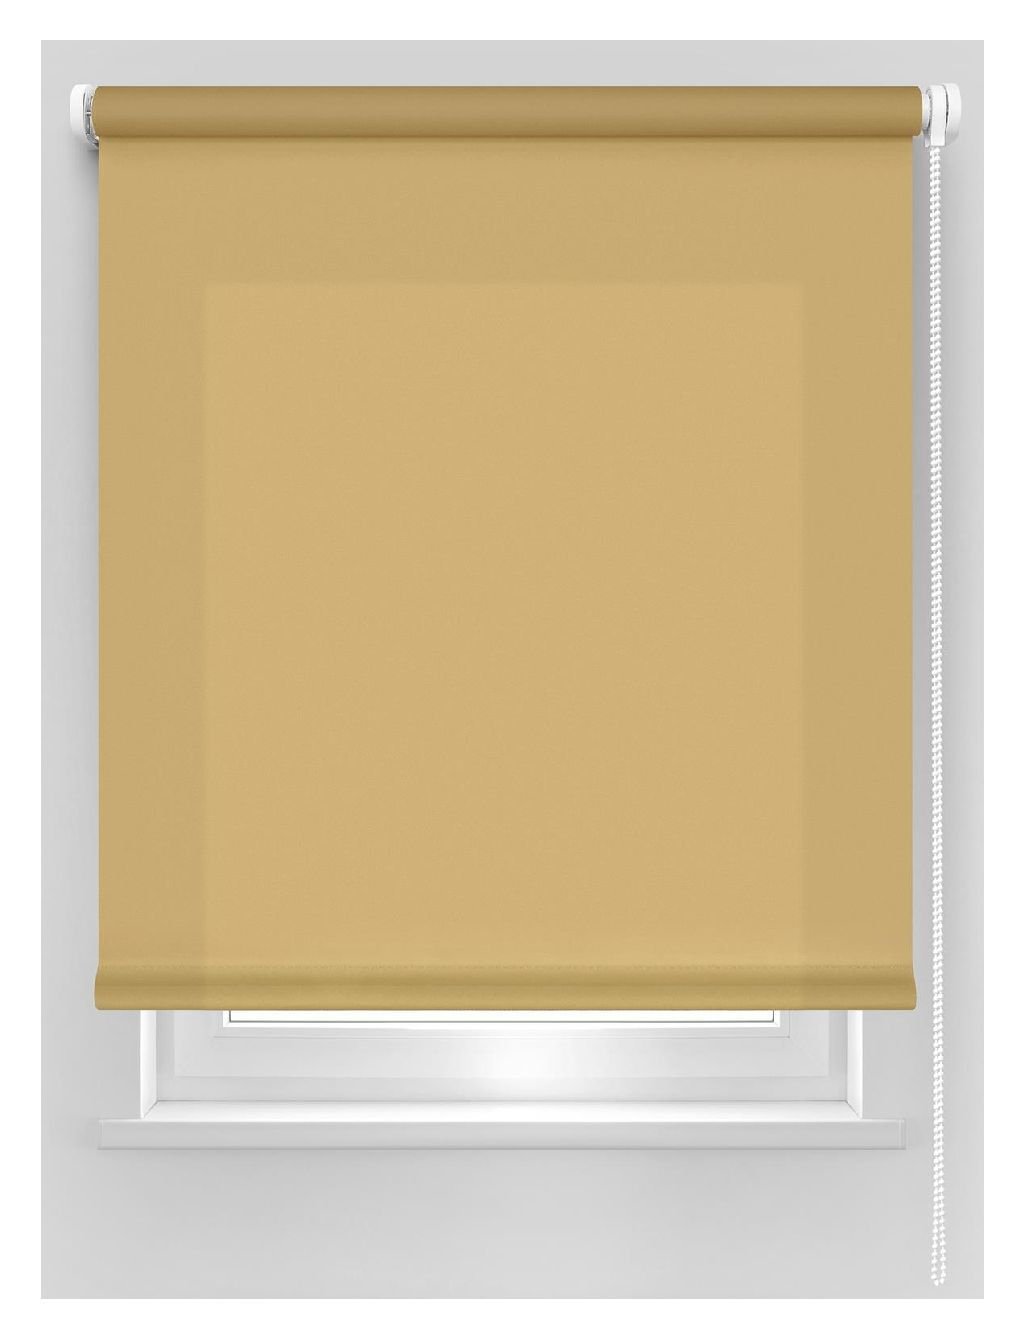 Klasikinė ritininė užuolaida DEKORIKA, šv. rudos sp., Ø 25 mm, 200 x 175 cm, 100 % PES